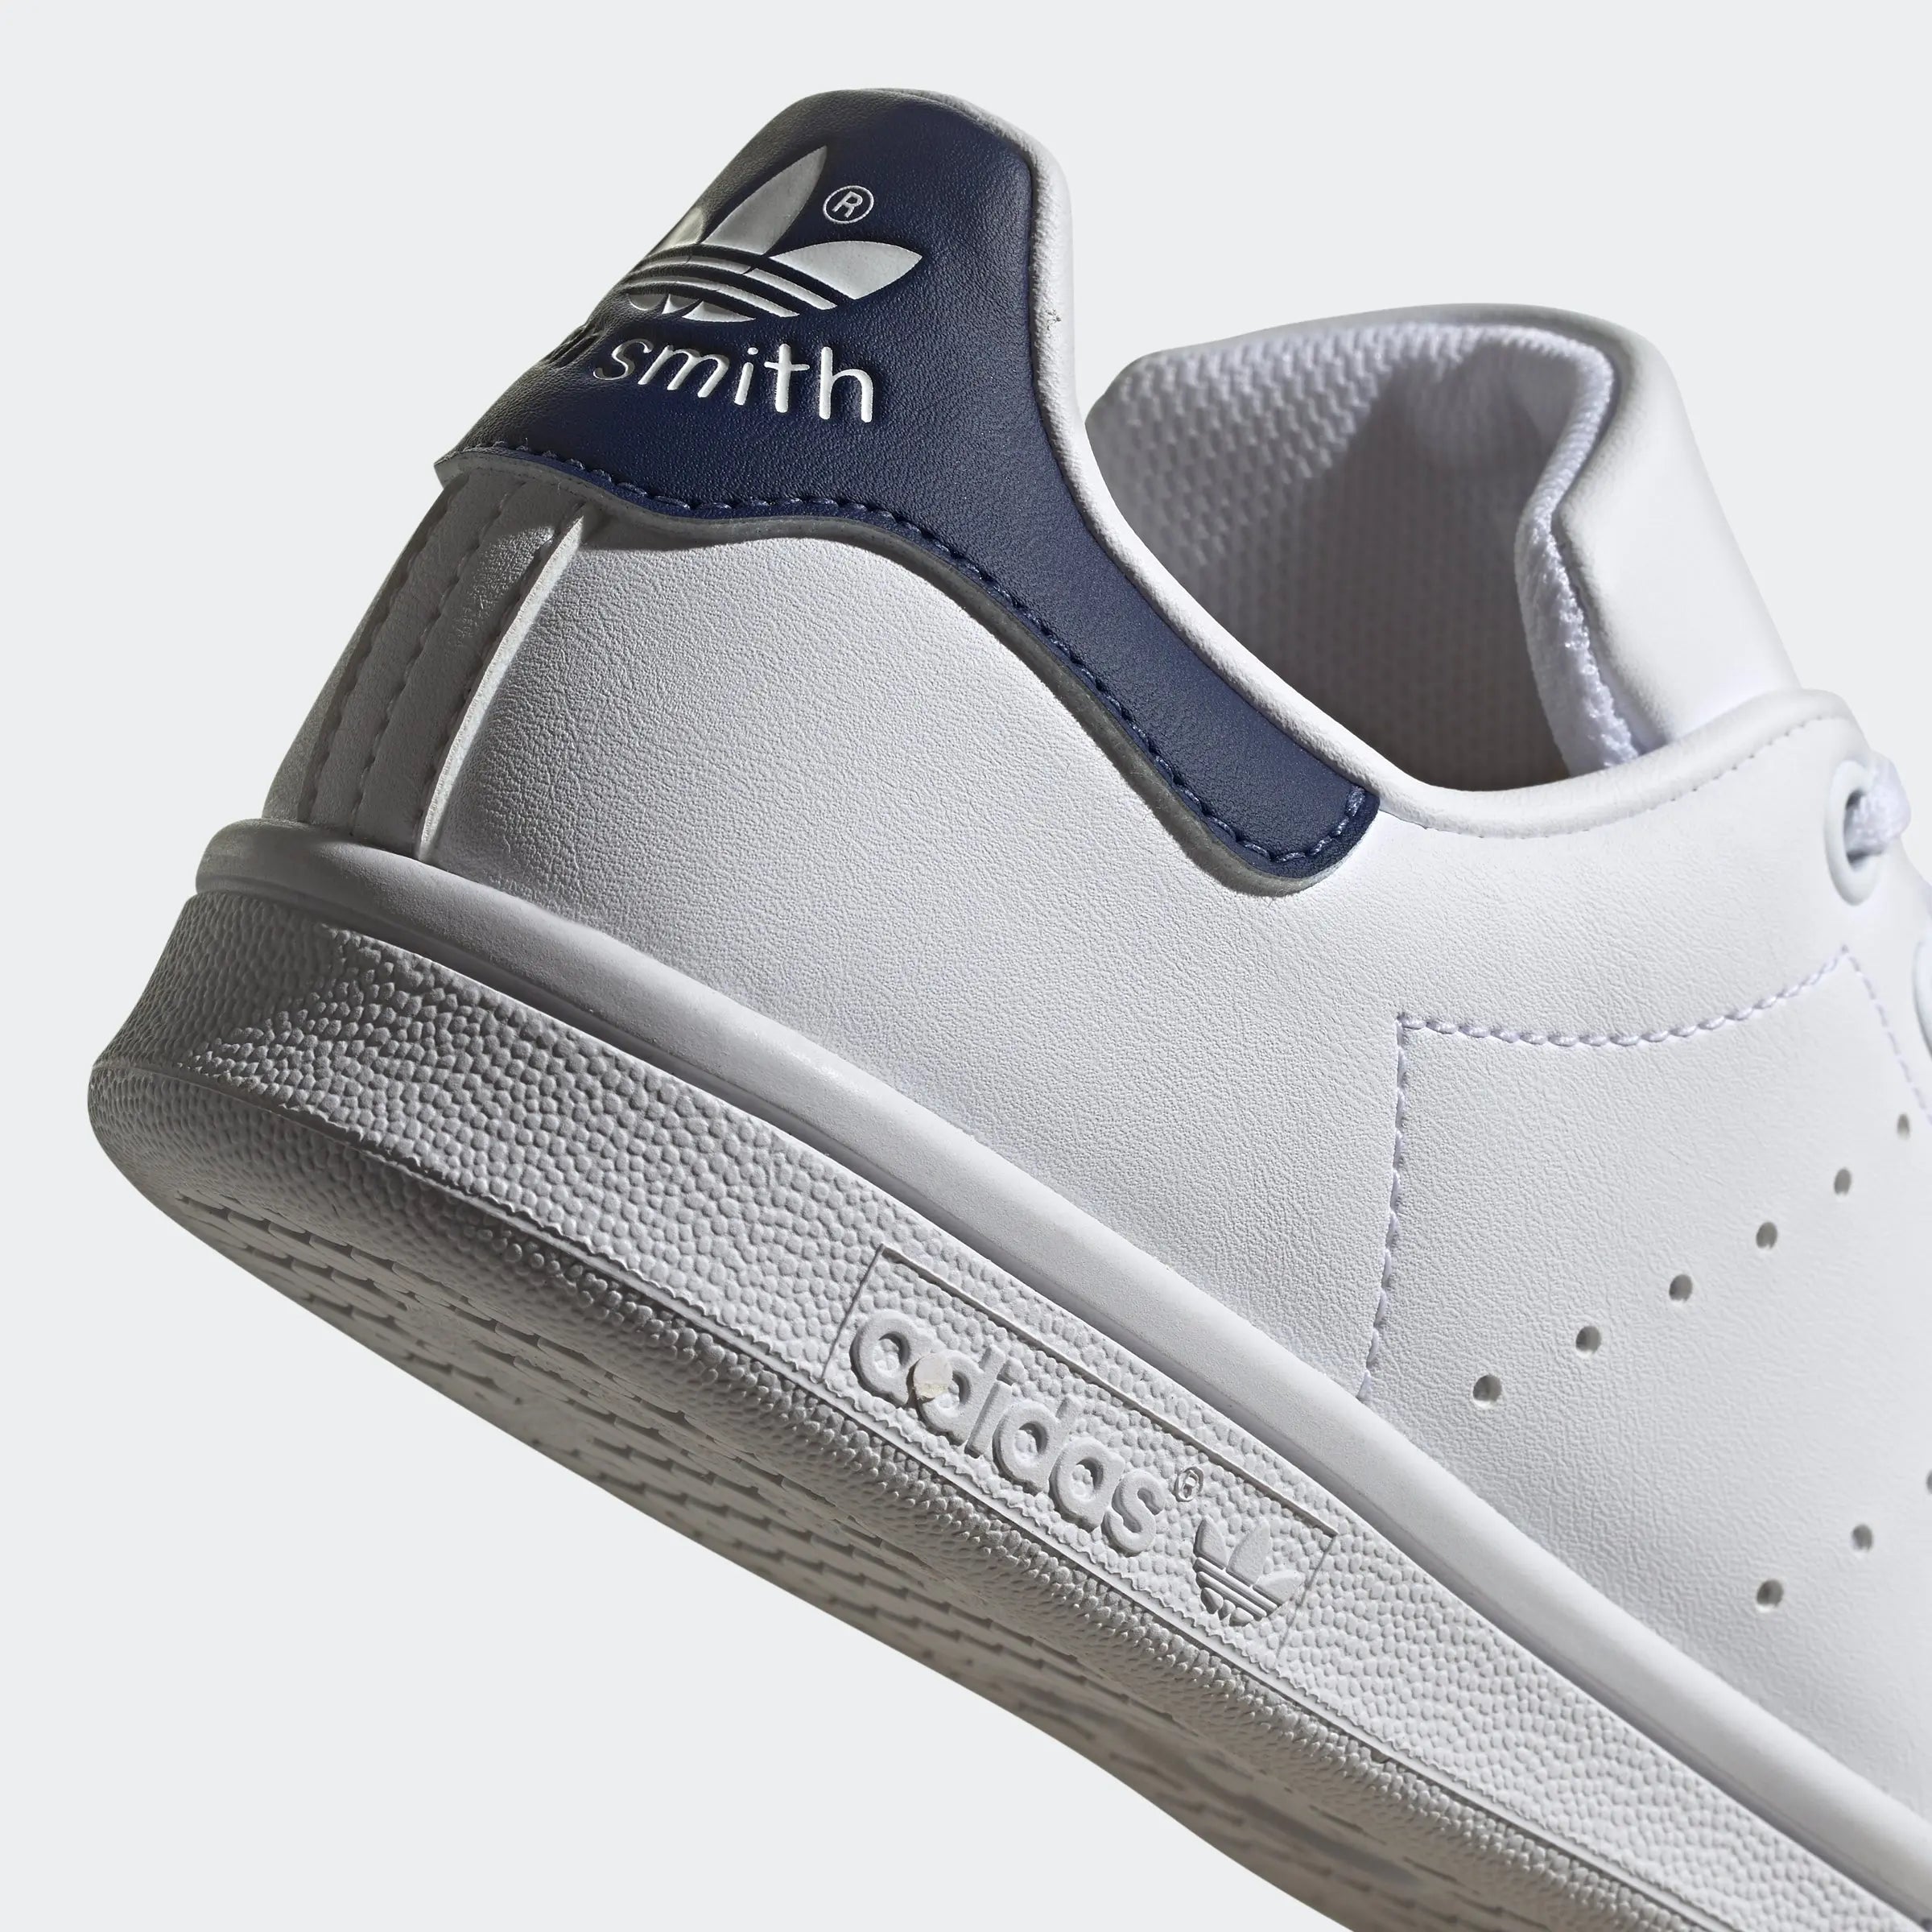 Adidas Stan Smith (GS) White Navy Adidas